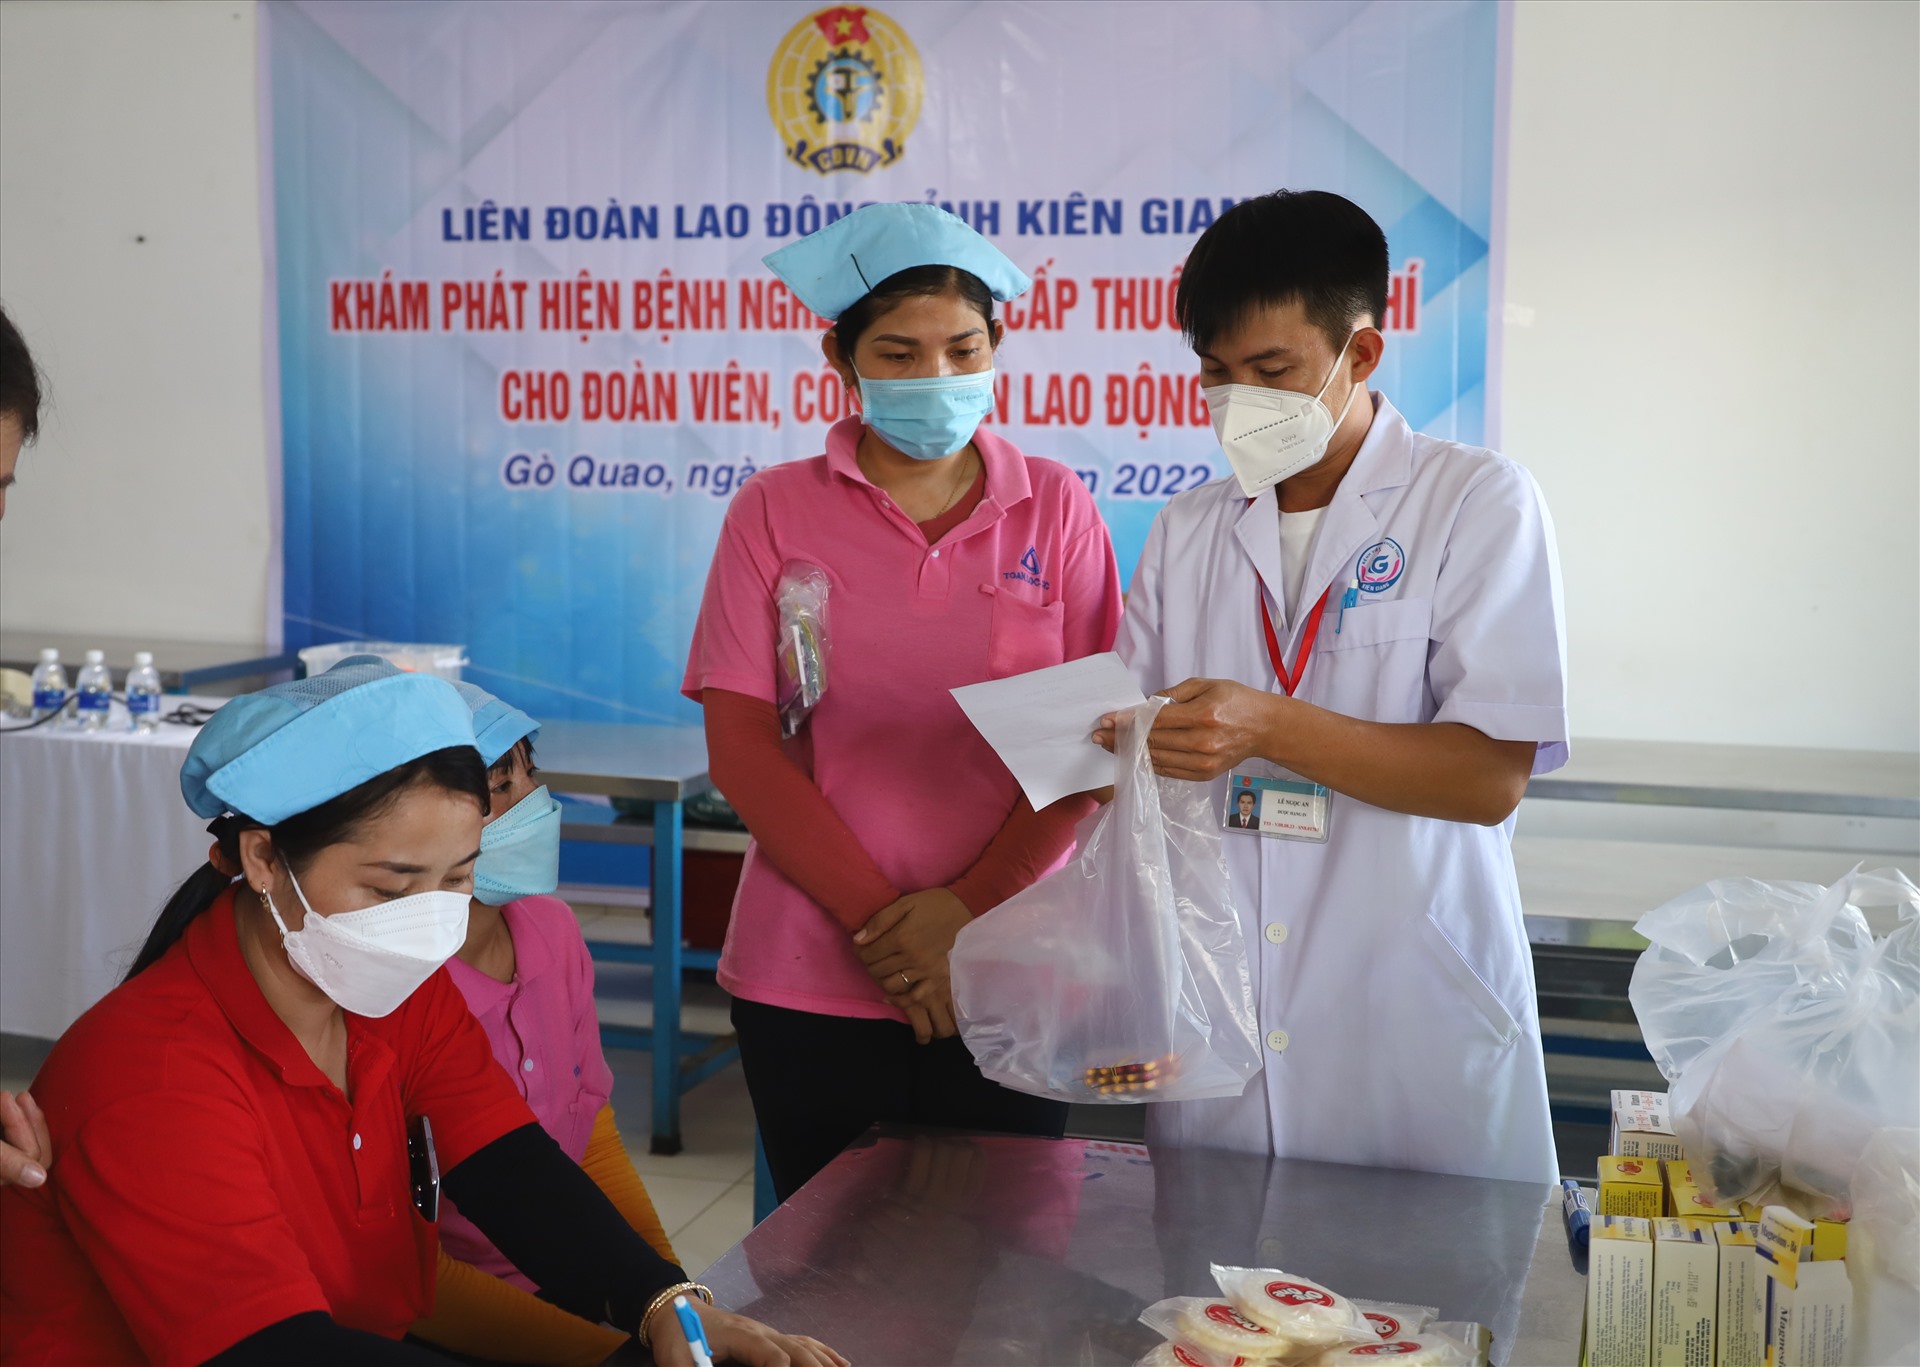 Khám, phát thuốc miễn phí cho công nhân ở huyện Gò Quao. Ảnh: Nguyên Anh